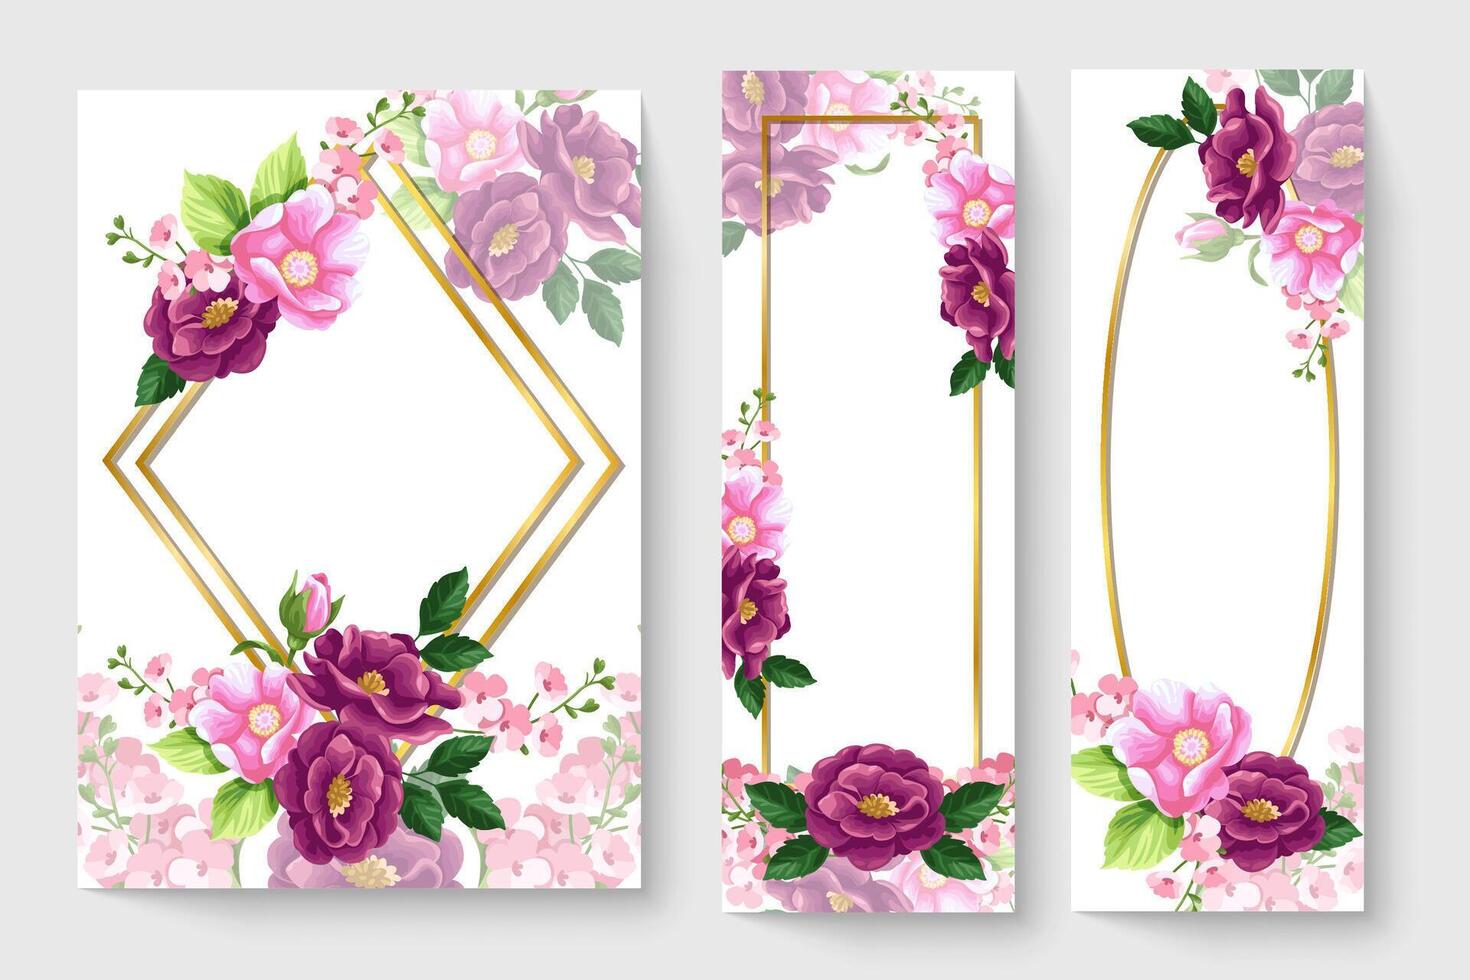 botanische kaart met roze bloemen, bladeren. lente ornament concept. bloemen poster, uitnodigen. vector lay-out decoratieve wenskaart of uitnodiging ontwerp achtergrond. hand getekende illustratie